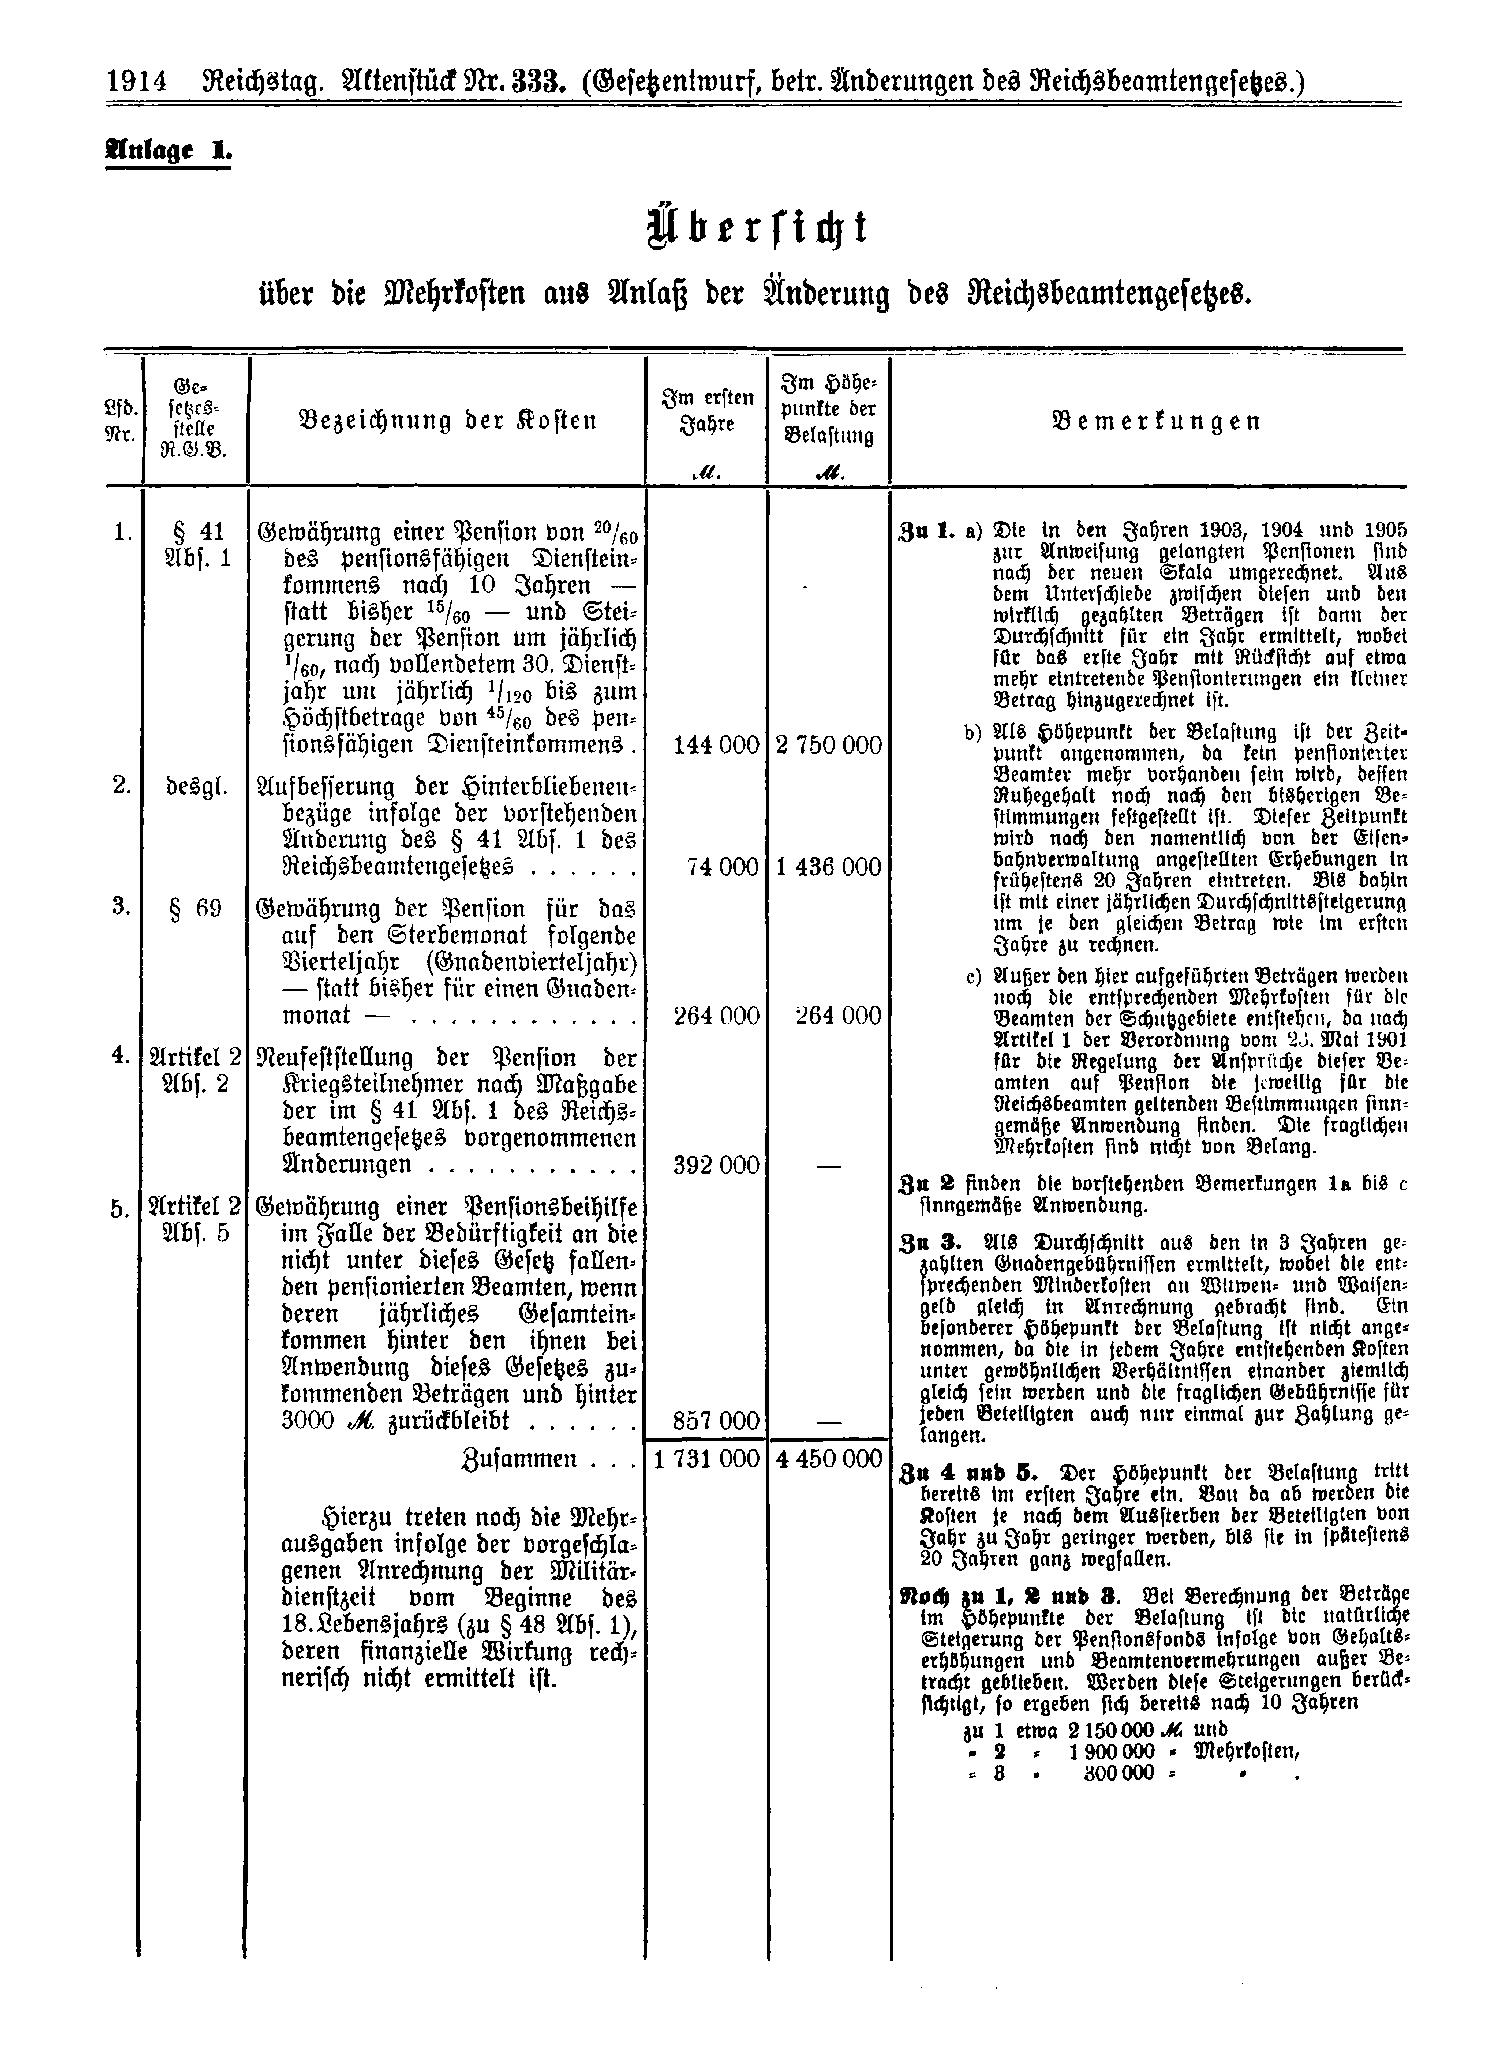 Scan der Seite 1914